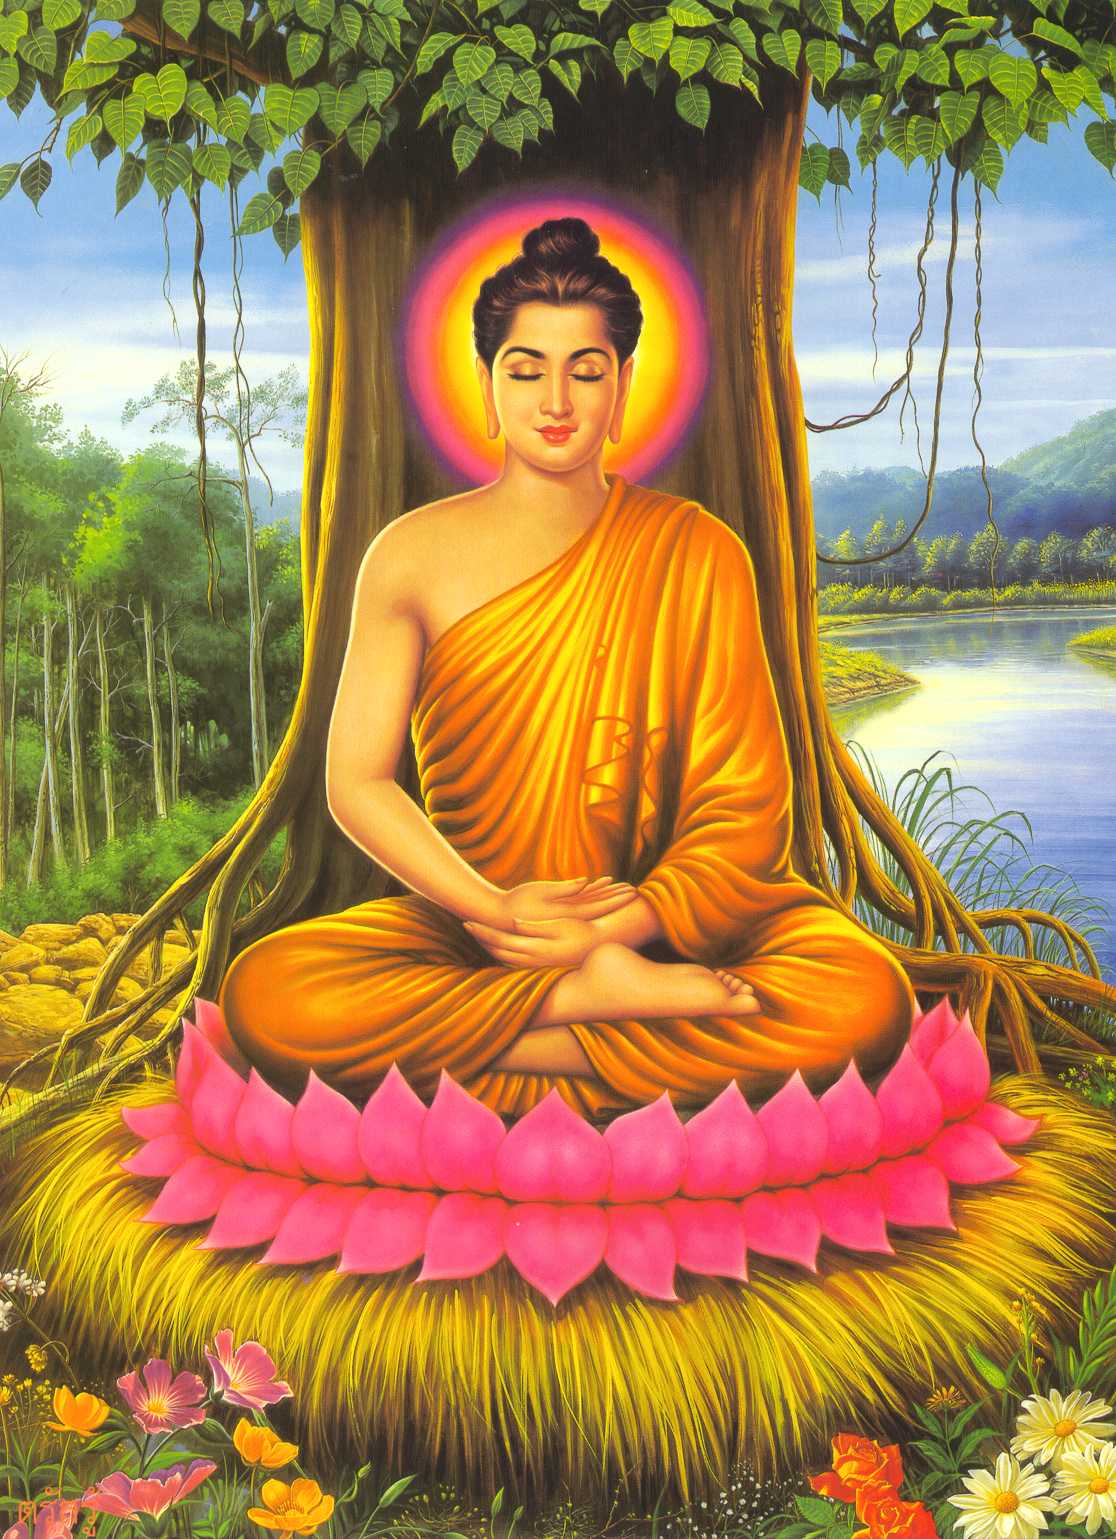 Buddhism Ceaemonies - wat ketanak